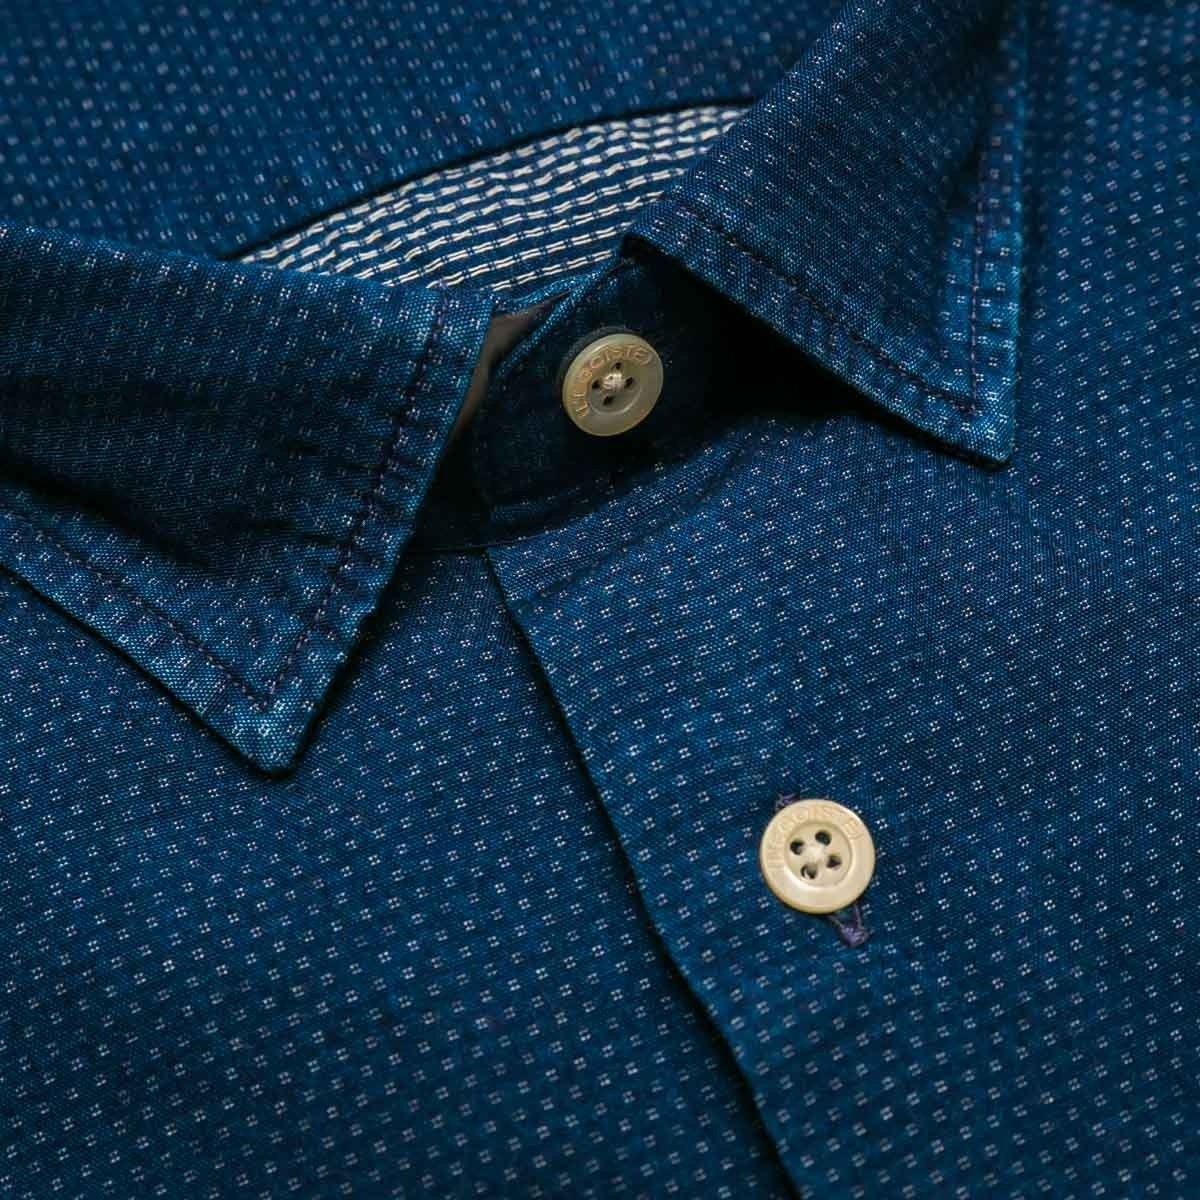 chemise-en-denim-bleu-fonce-manches-longues-pour-homme-detail-col